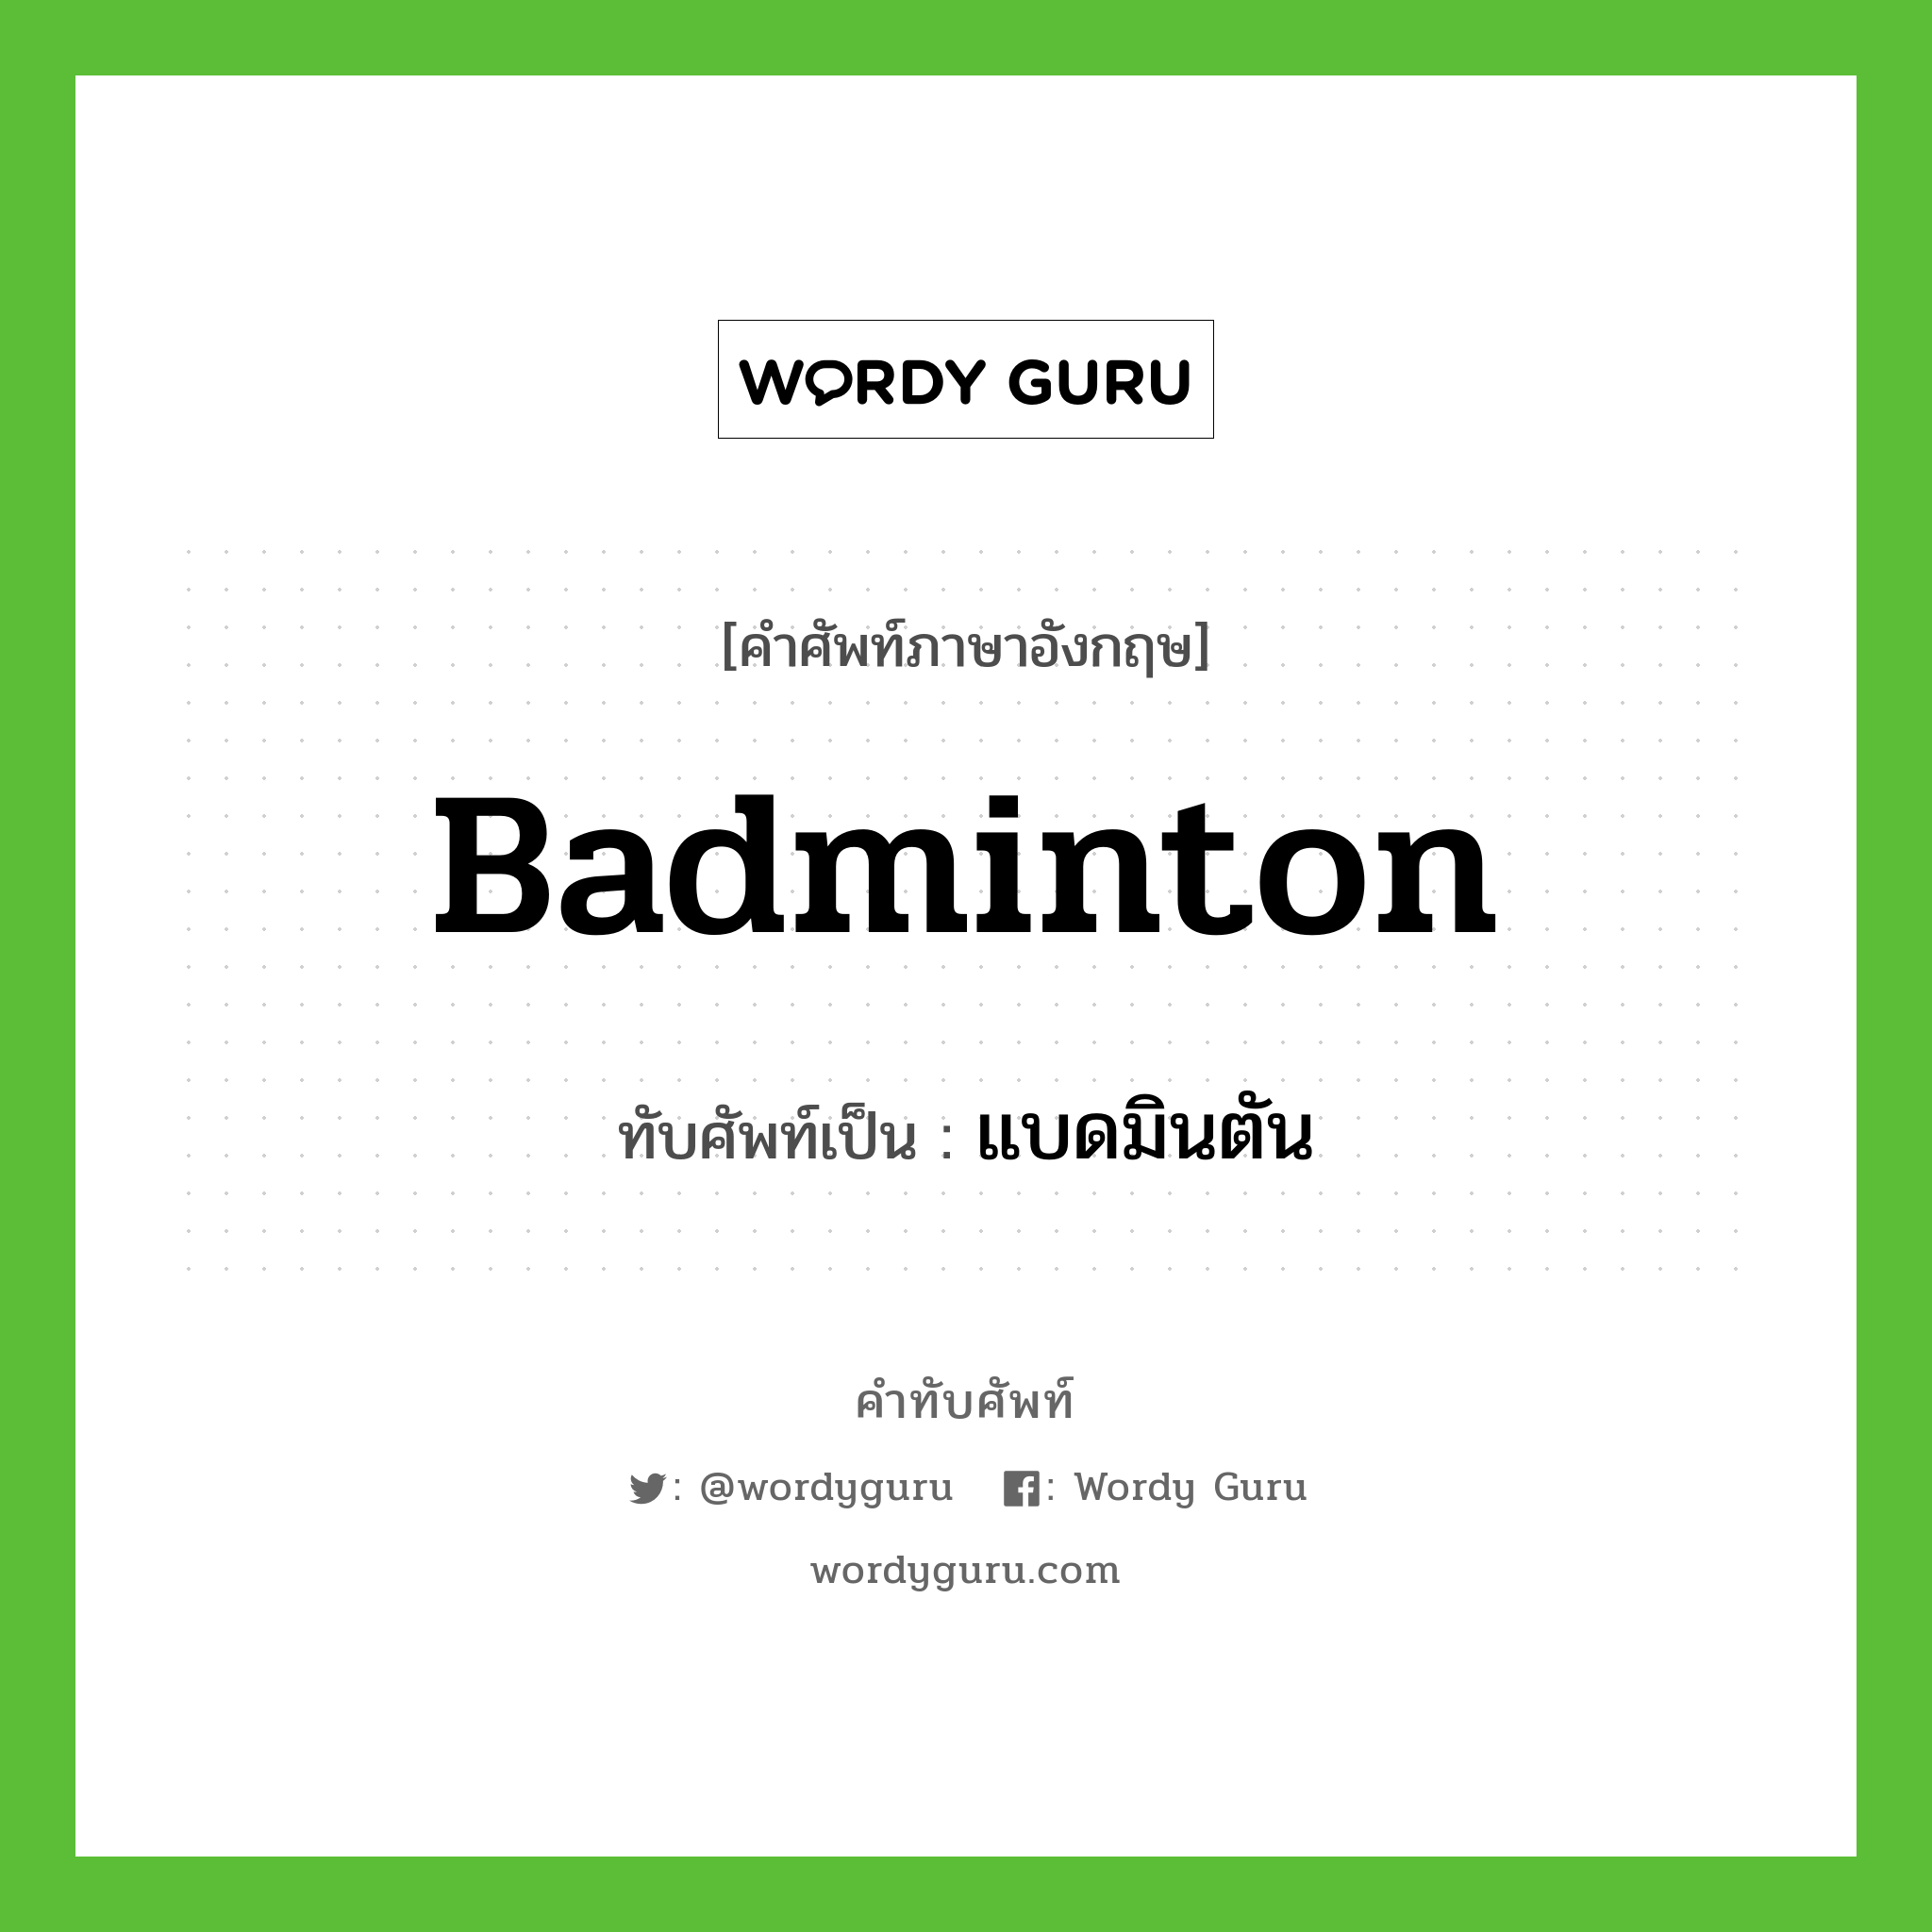 badminton เขียนเป็นคำไทยว่าอะไร?, คำศัพท์ภาษาอังกฤษ badminton ทับศัพท์เป็น แบดมินตัน